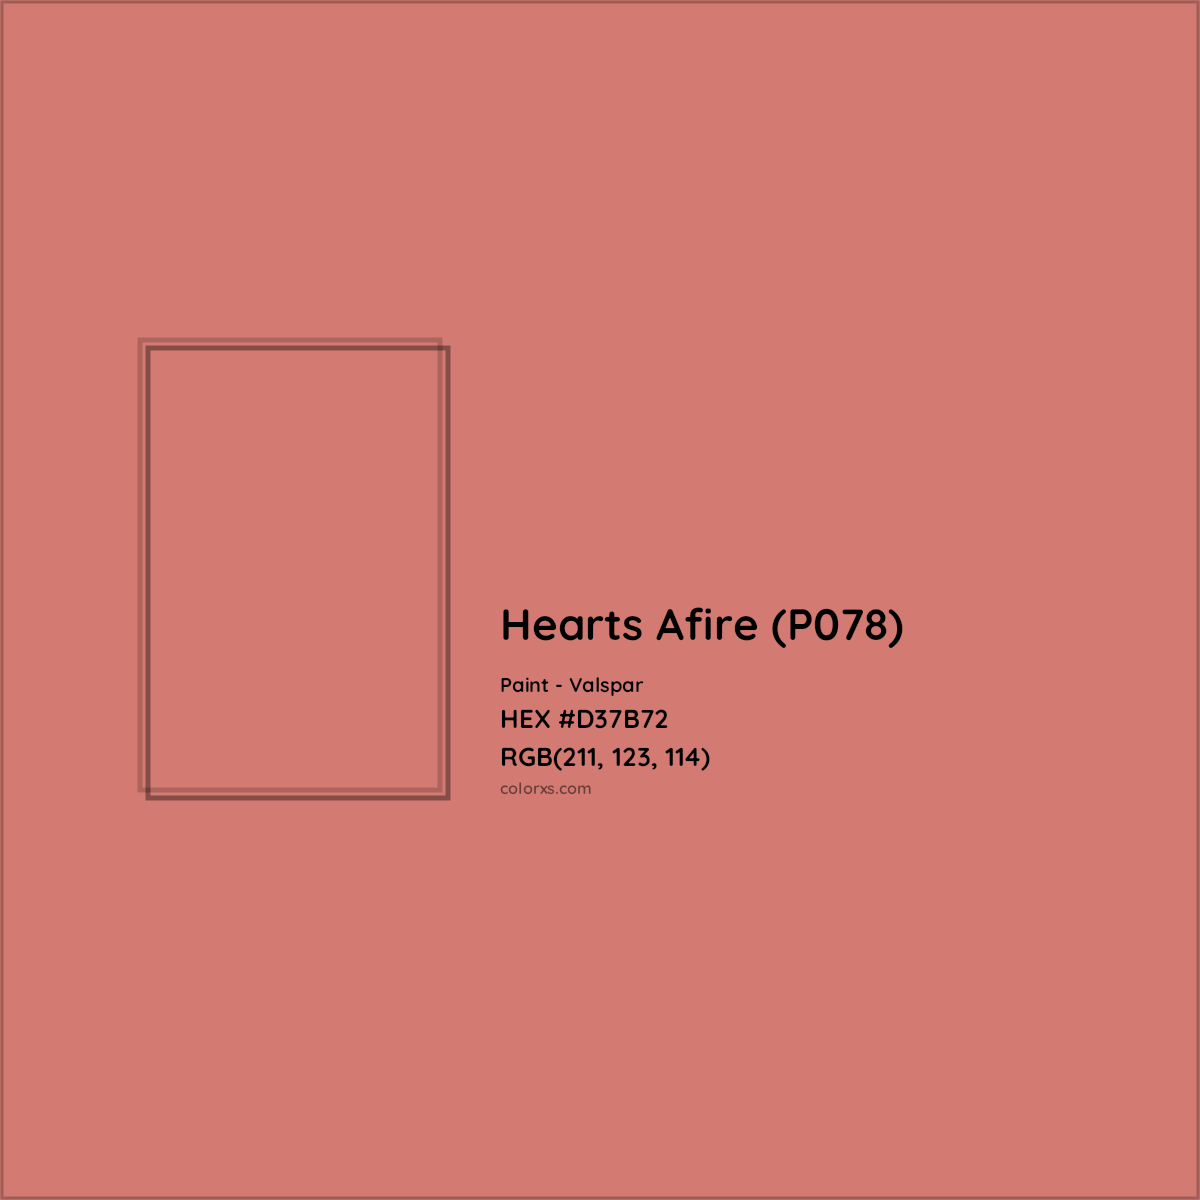 HEX #D37B72 Hearts Afire (P078) Paint Valspar - Color Code